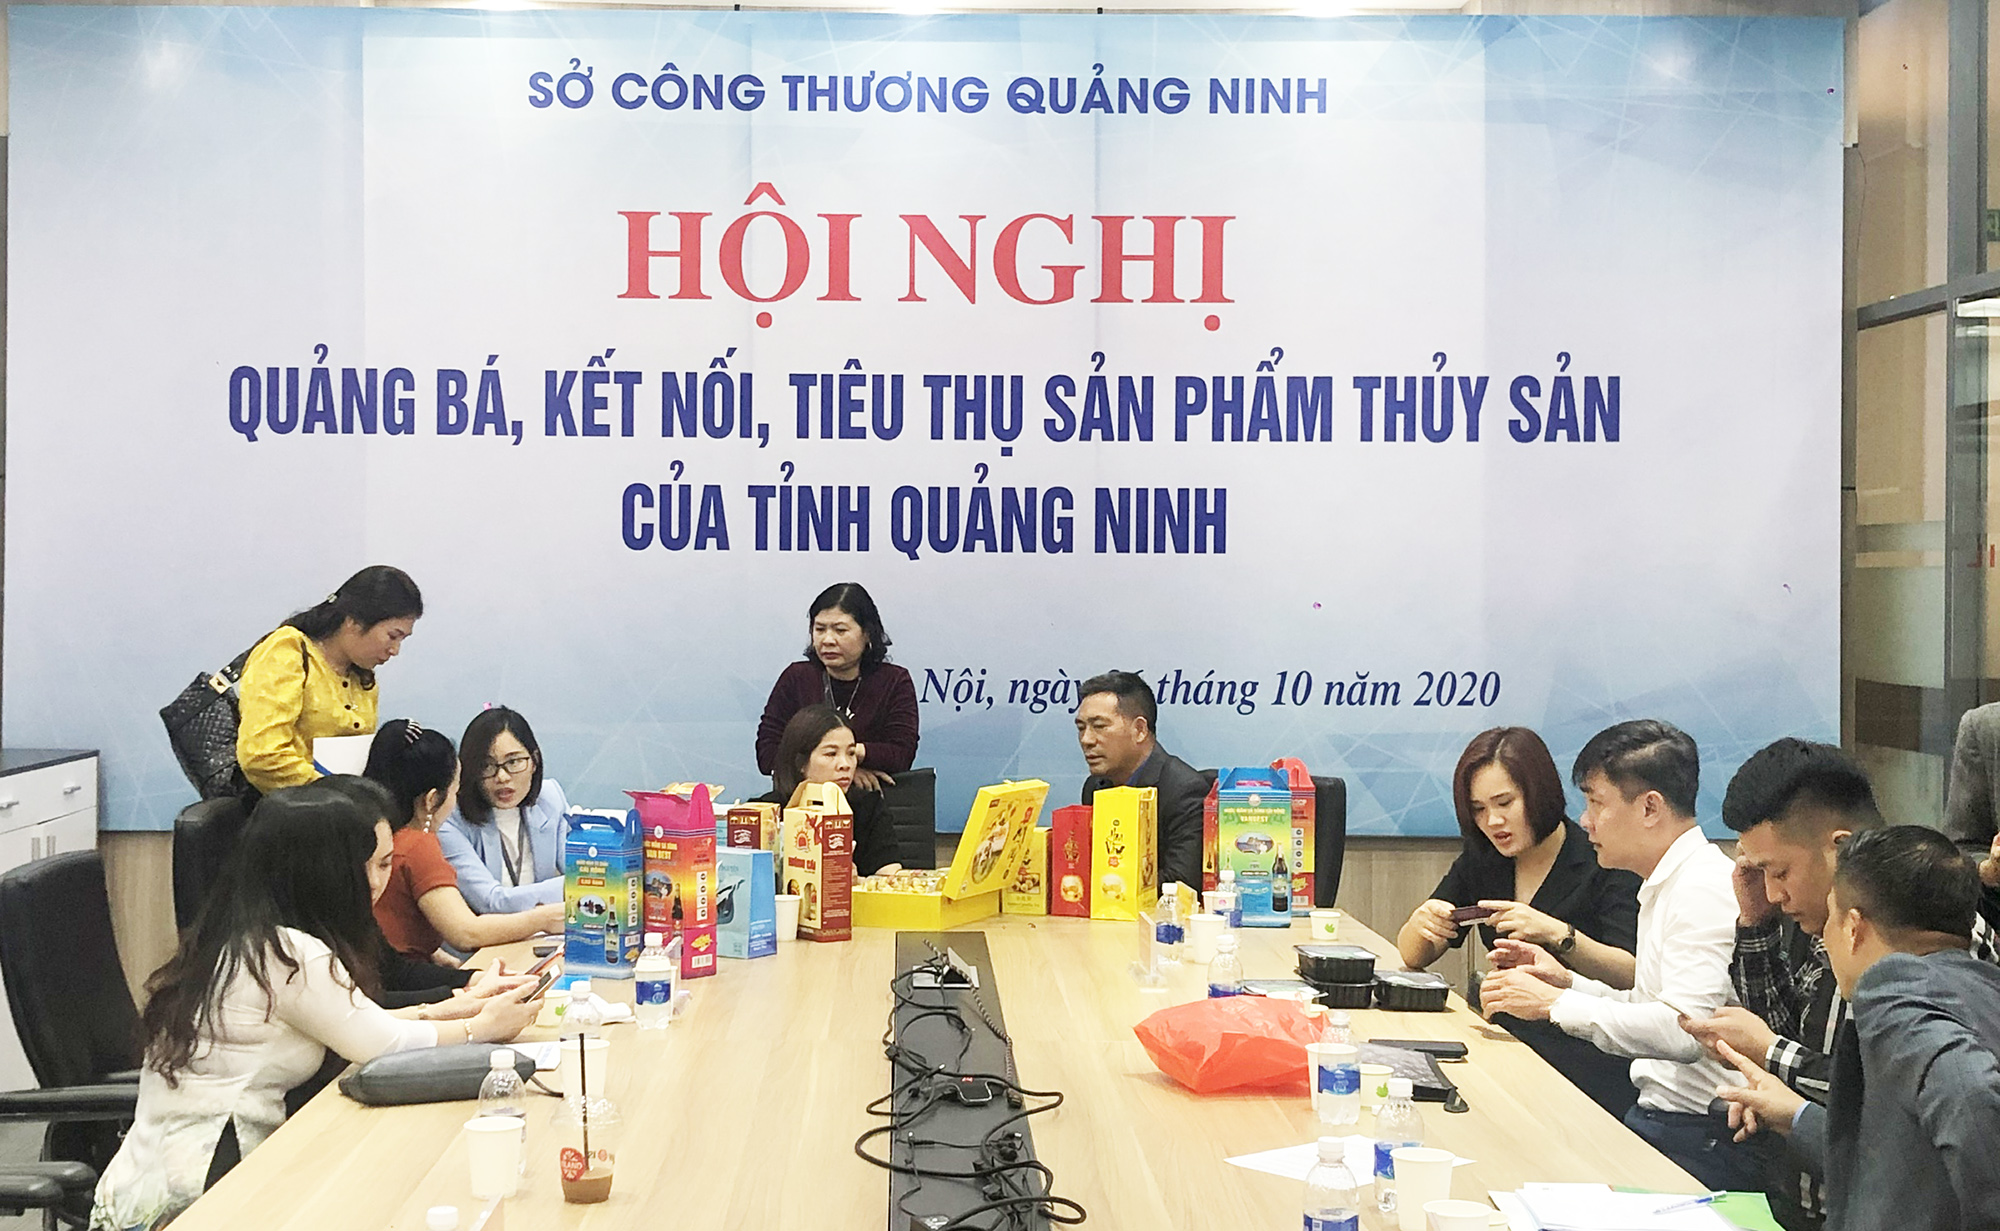 Hội nghị quảng bá, kết nối, tiêu thụ sản phẩm thủy sản Quảng Ninh tại Hà Nội, tháng 10/2020.